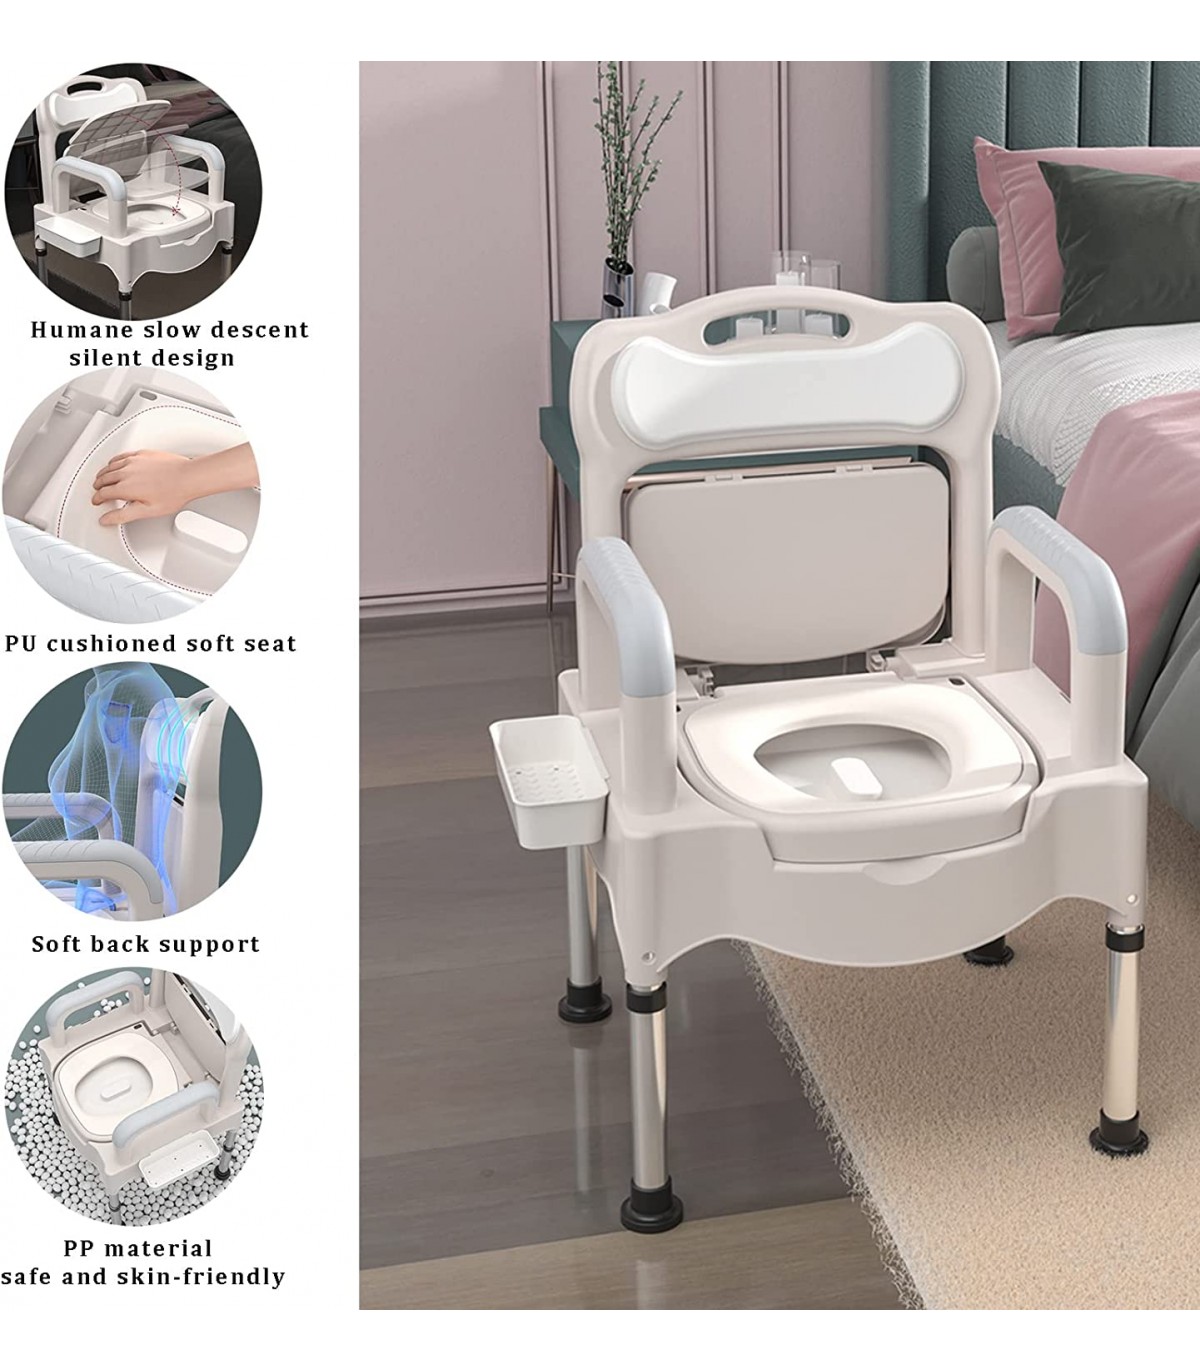 scaun-cu-toaleta-pentru-persoane-supraponderale-dr-happy-jlc00601